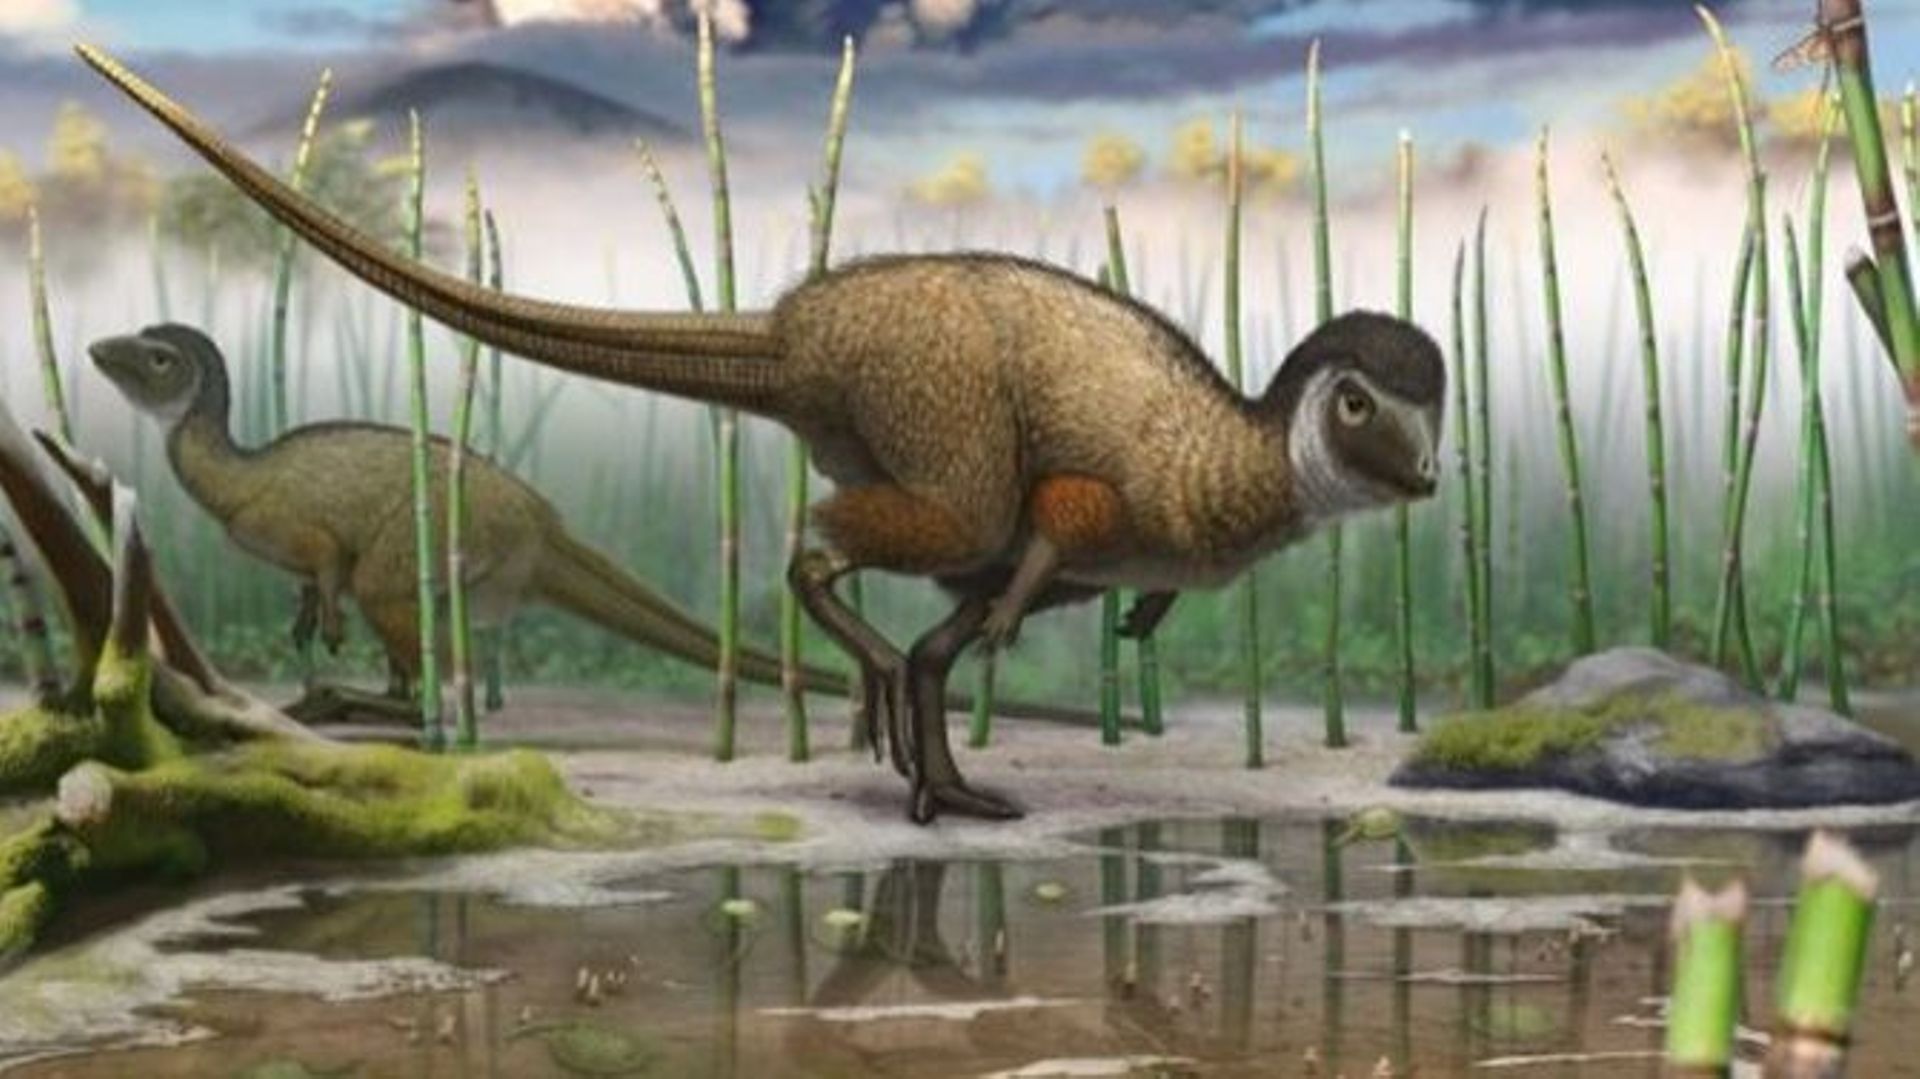 Kulindadromeus zabaikalicus, le petit dinosaure herbivore découvert récemment en Sibérie